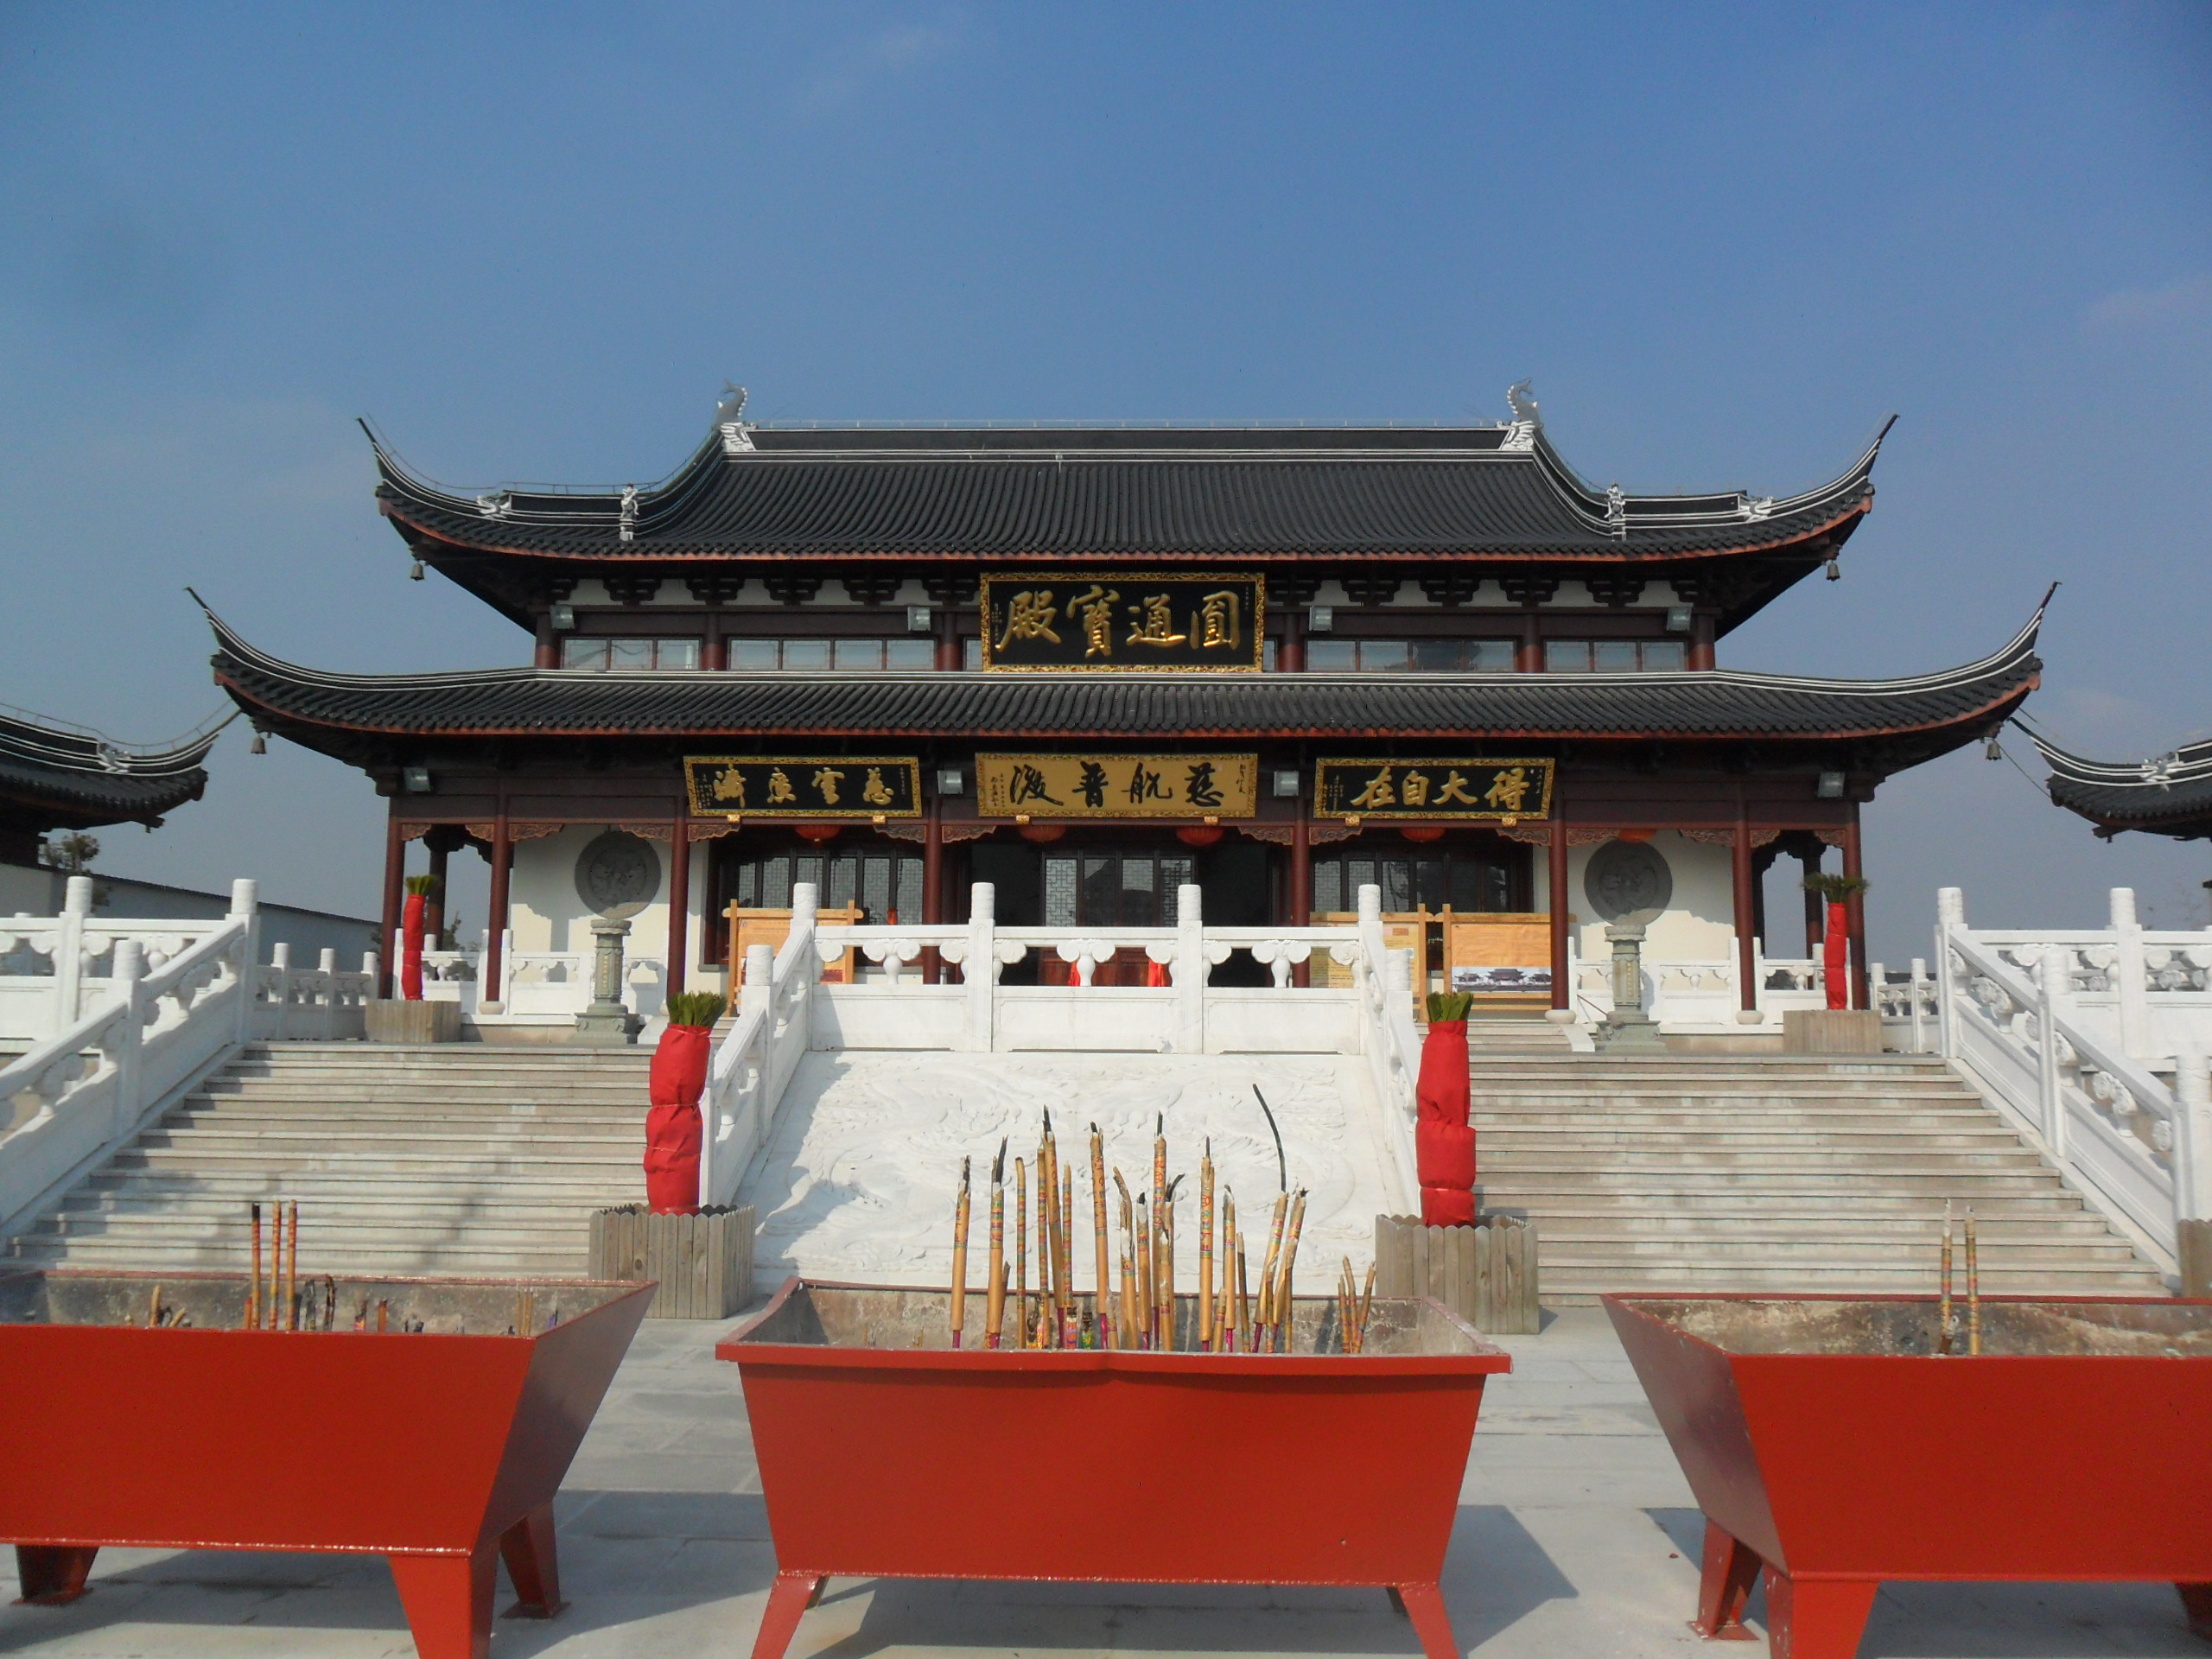 【携程攻略】上海东海观音寺景点,东海观音寺位于上海市奉贤区海湾